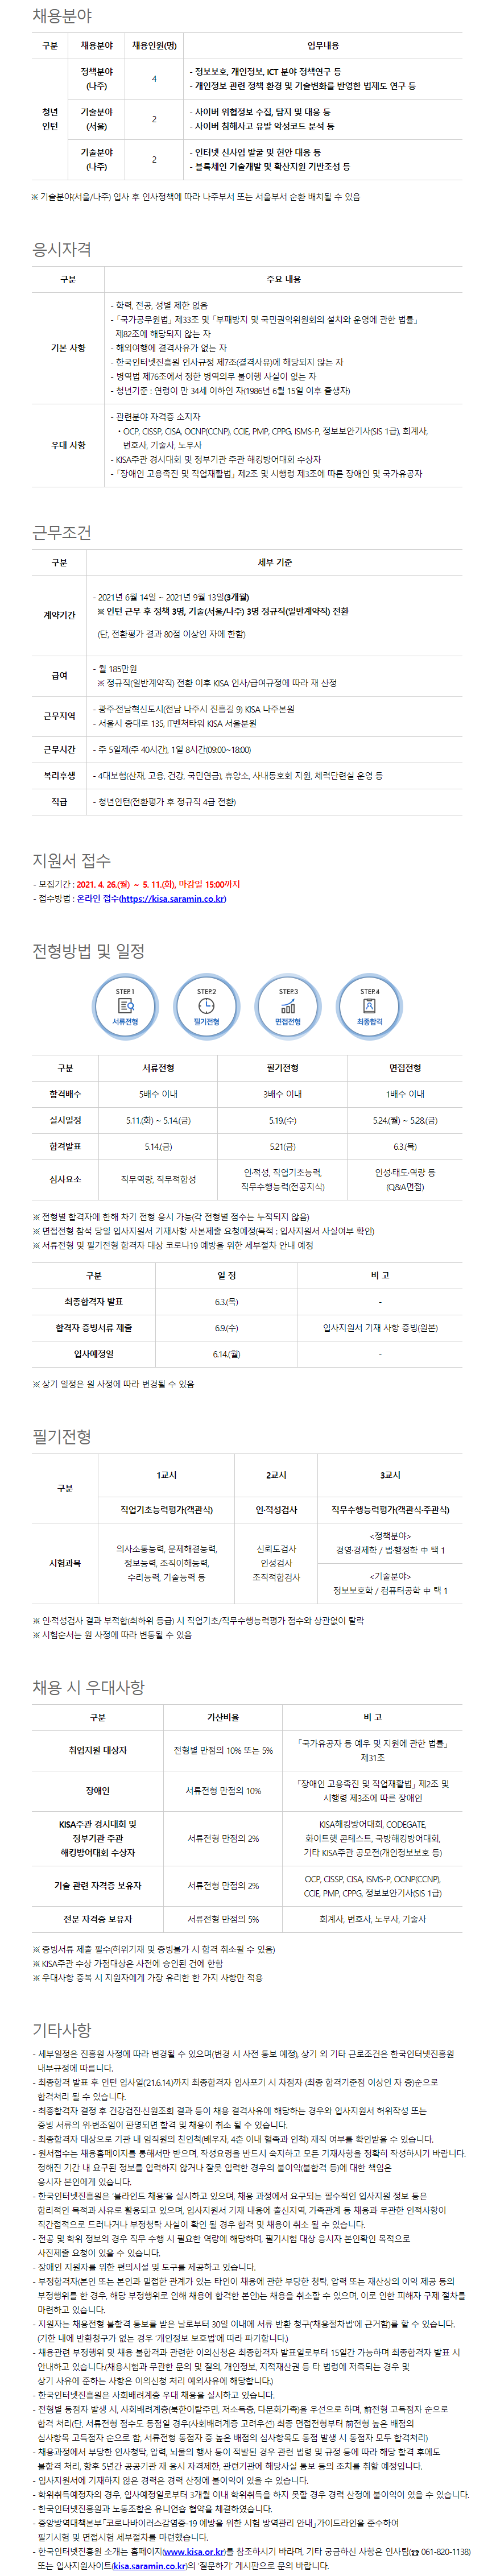 2021년도 상반기 한국인터넷진흥원 채용형 청년인턴 공개채용